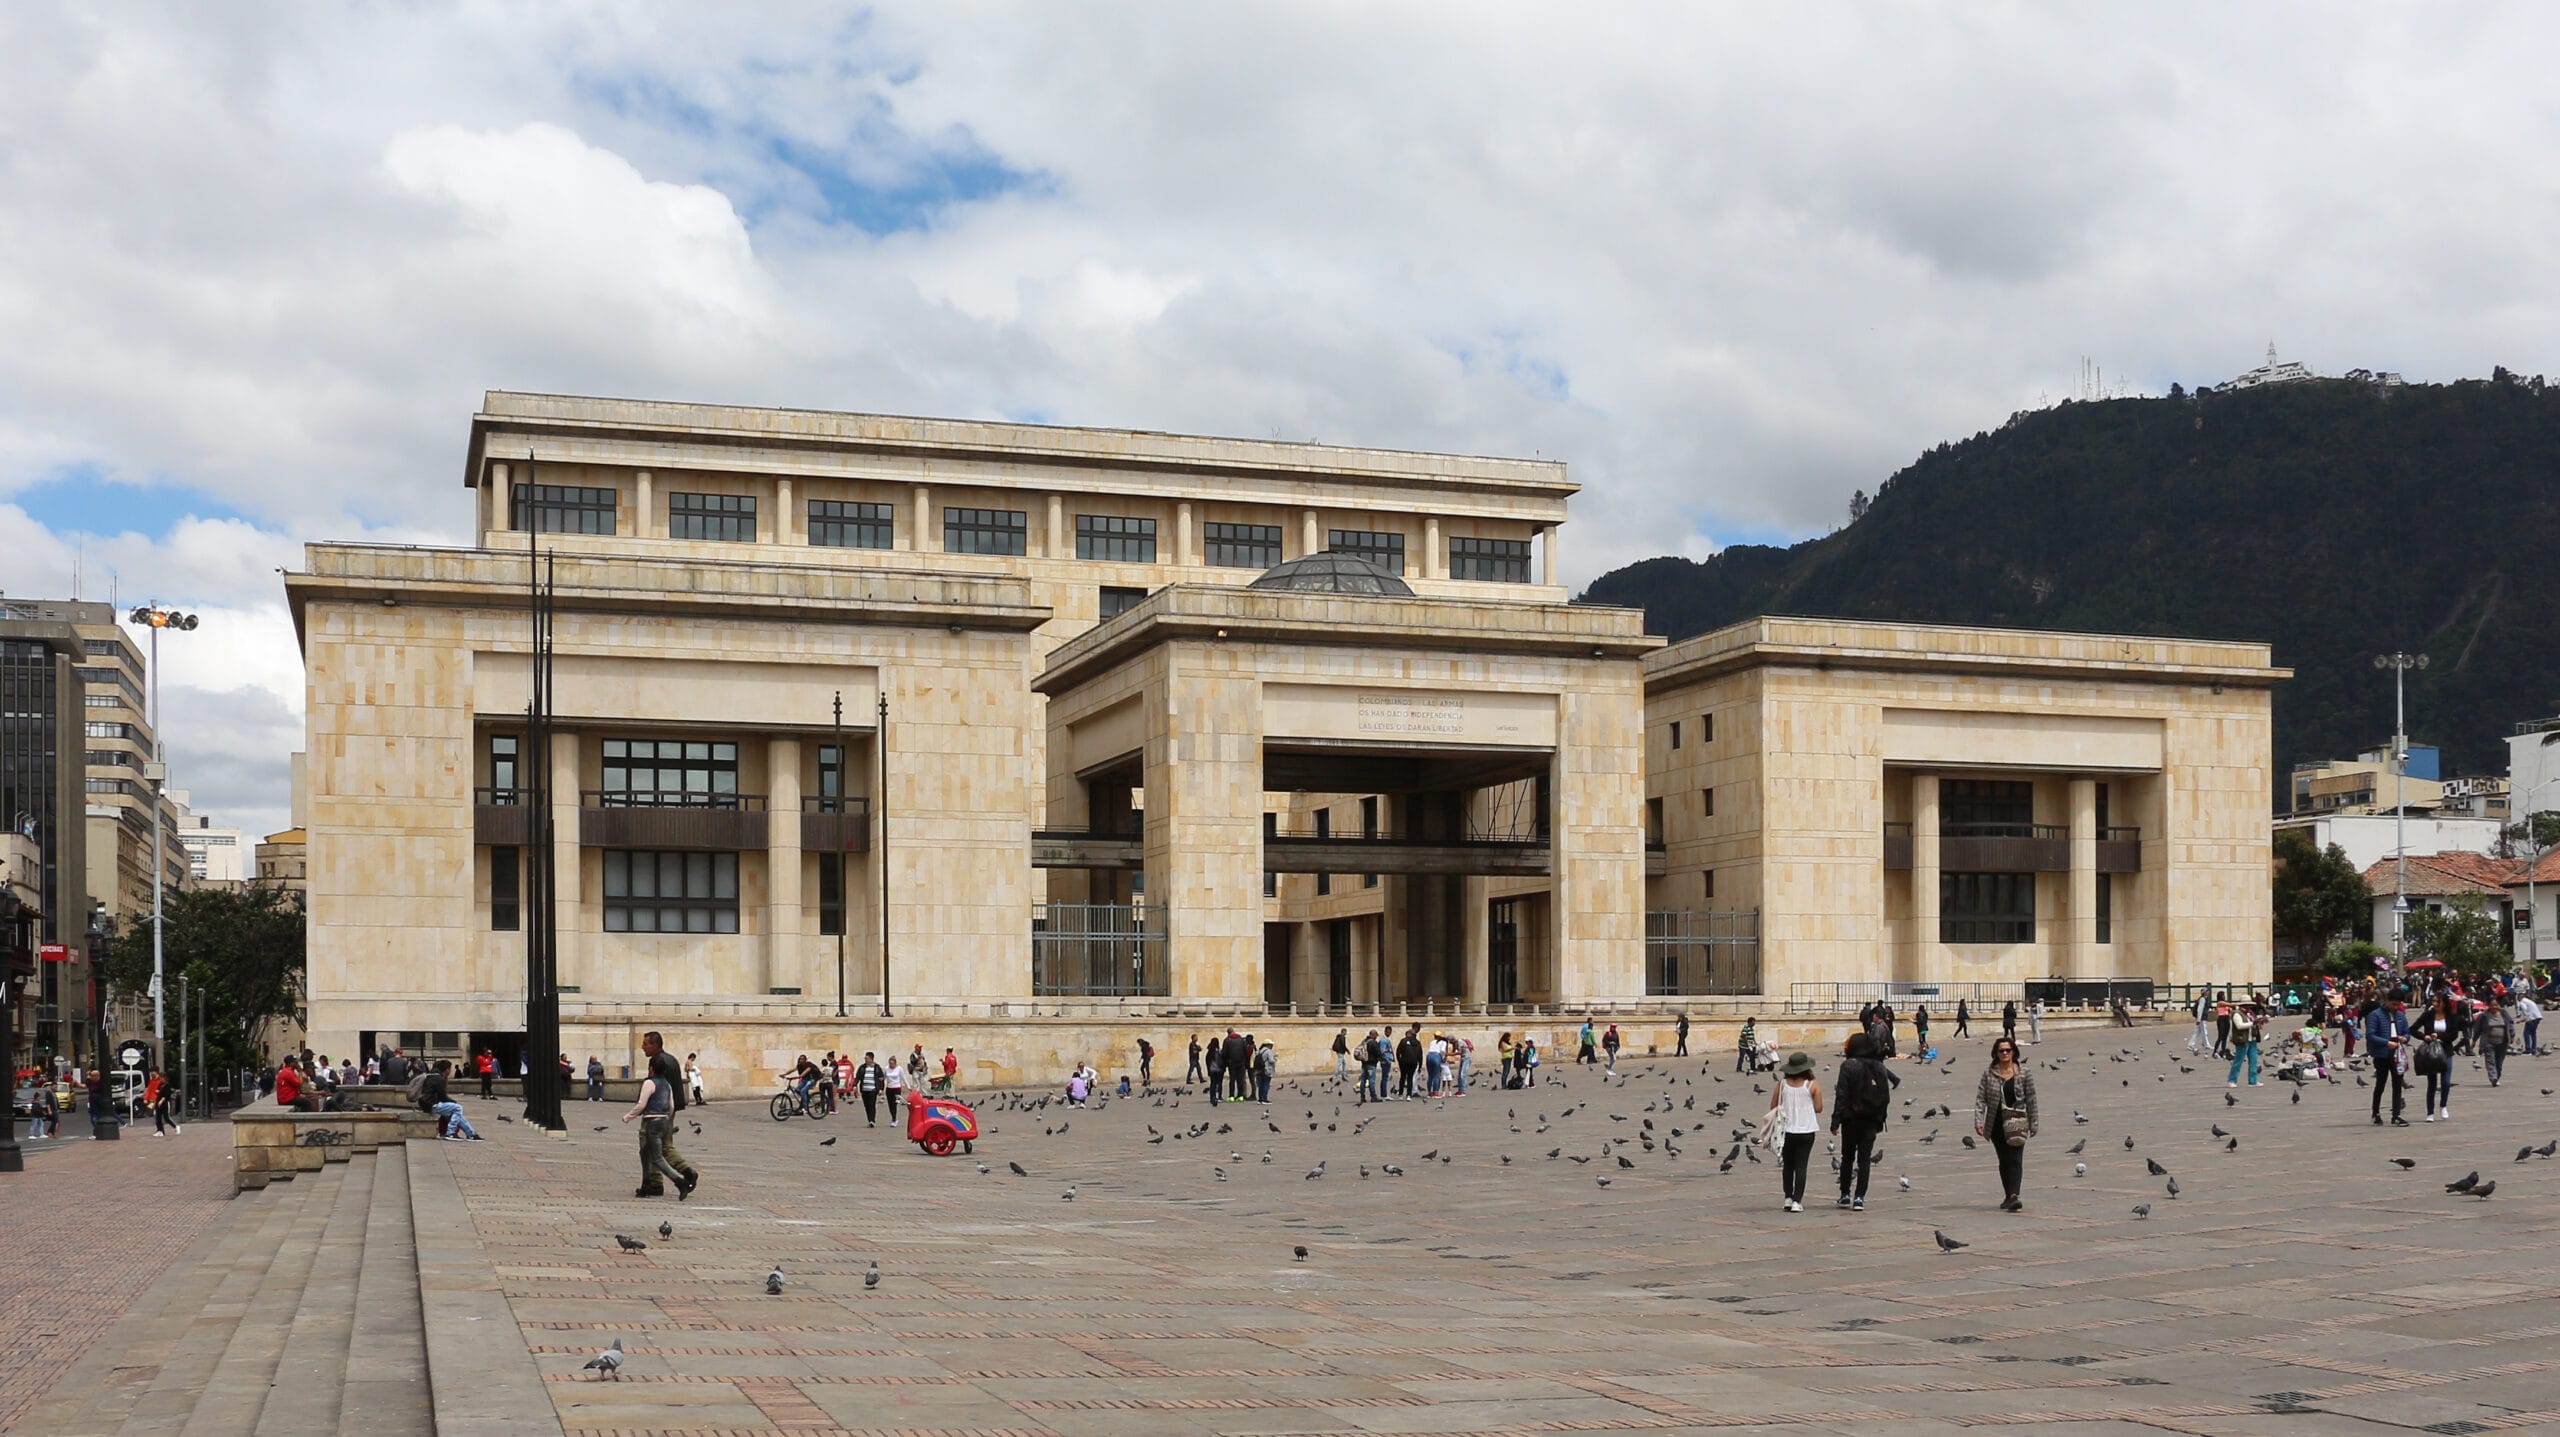 Palacio de Justicia de Colombia, Capitolio Nacional Bogotá.jpg - Wikimedia Commons